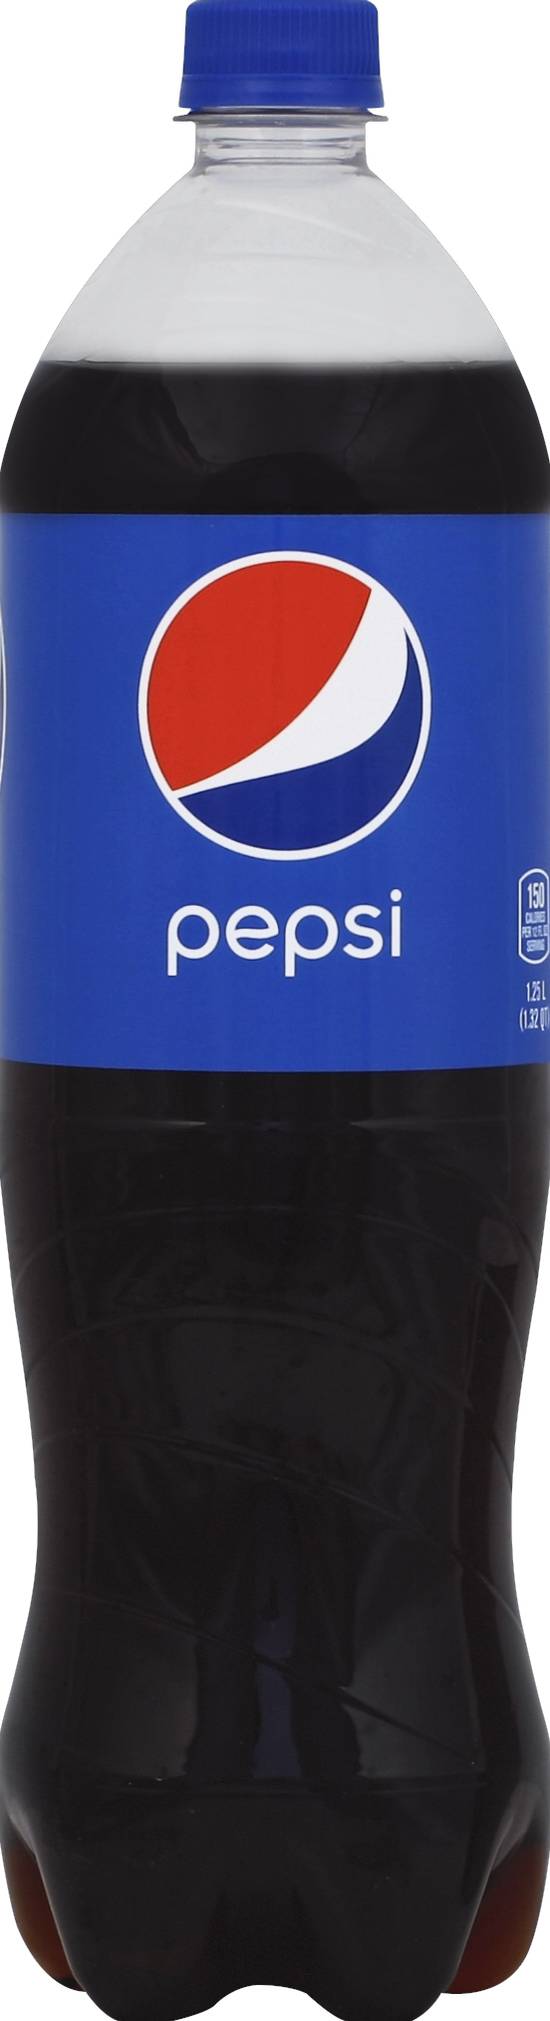 Pepsi Original Soda (1.25 L)